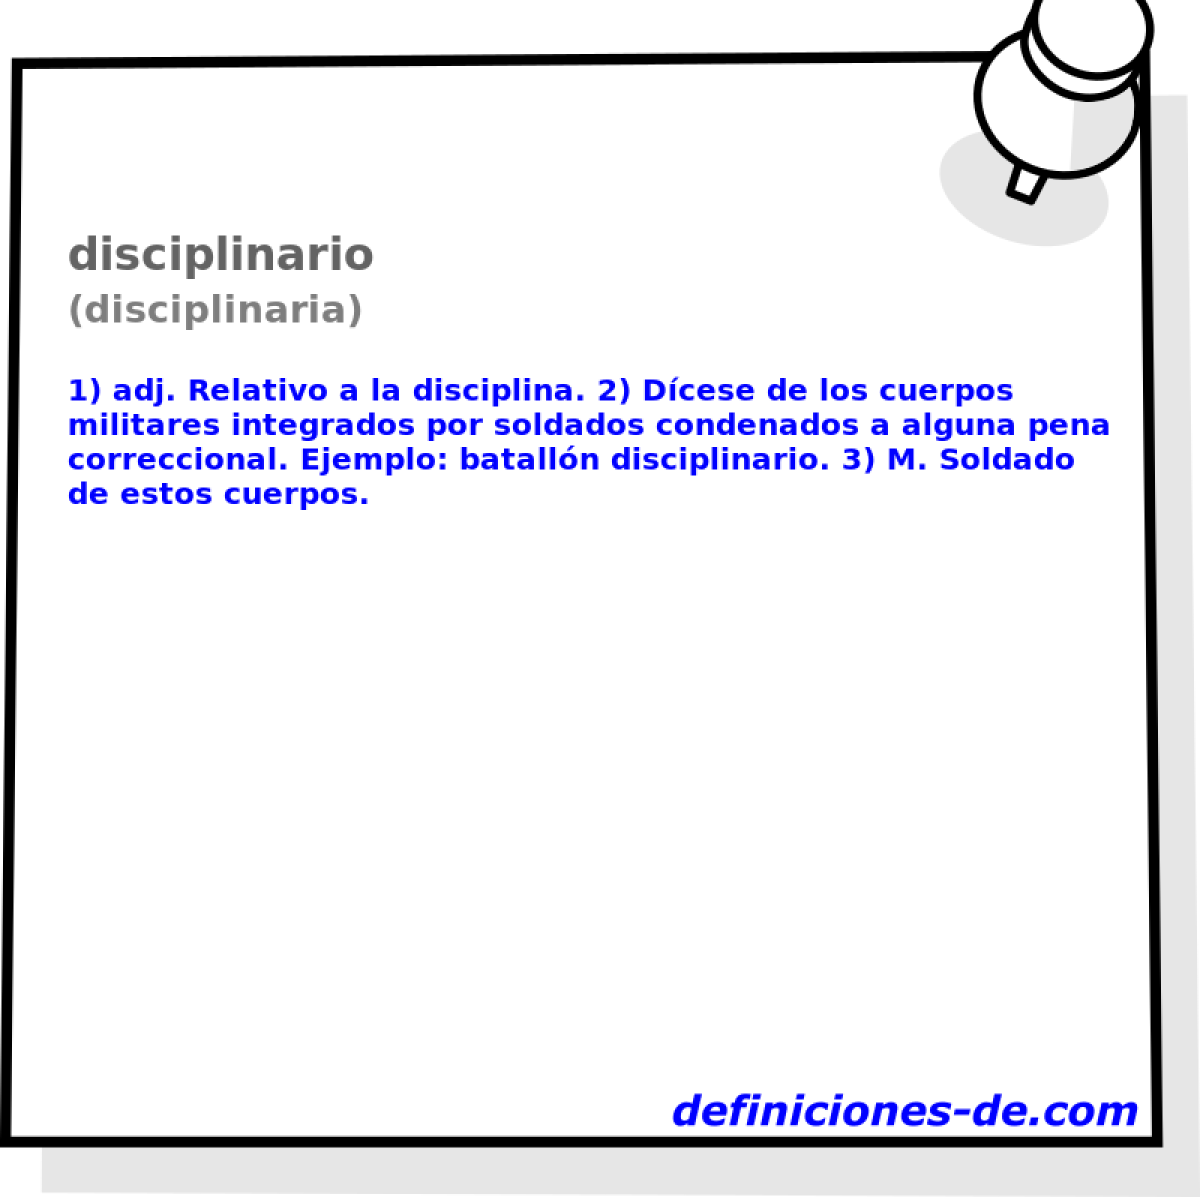 disciplinario (disciplinaria)